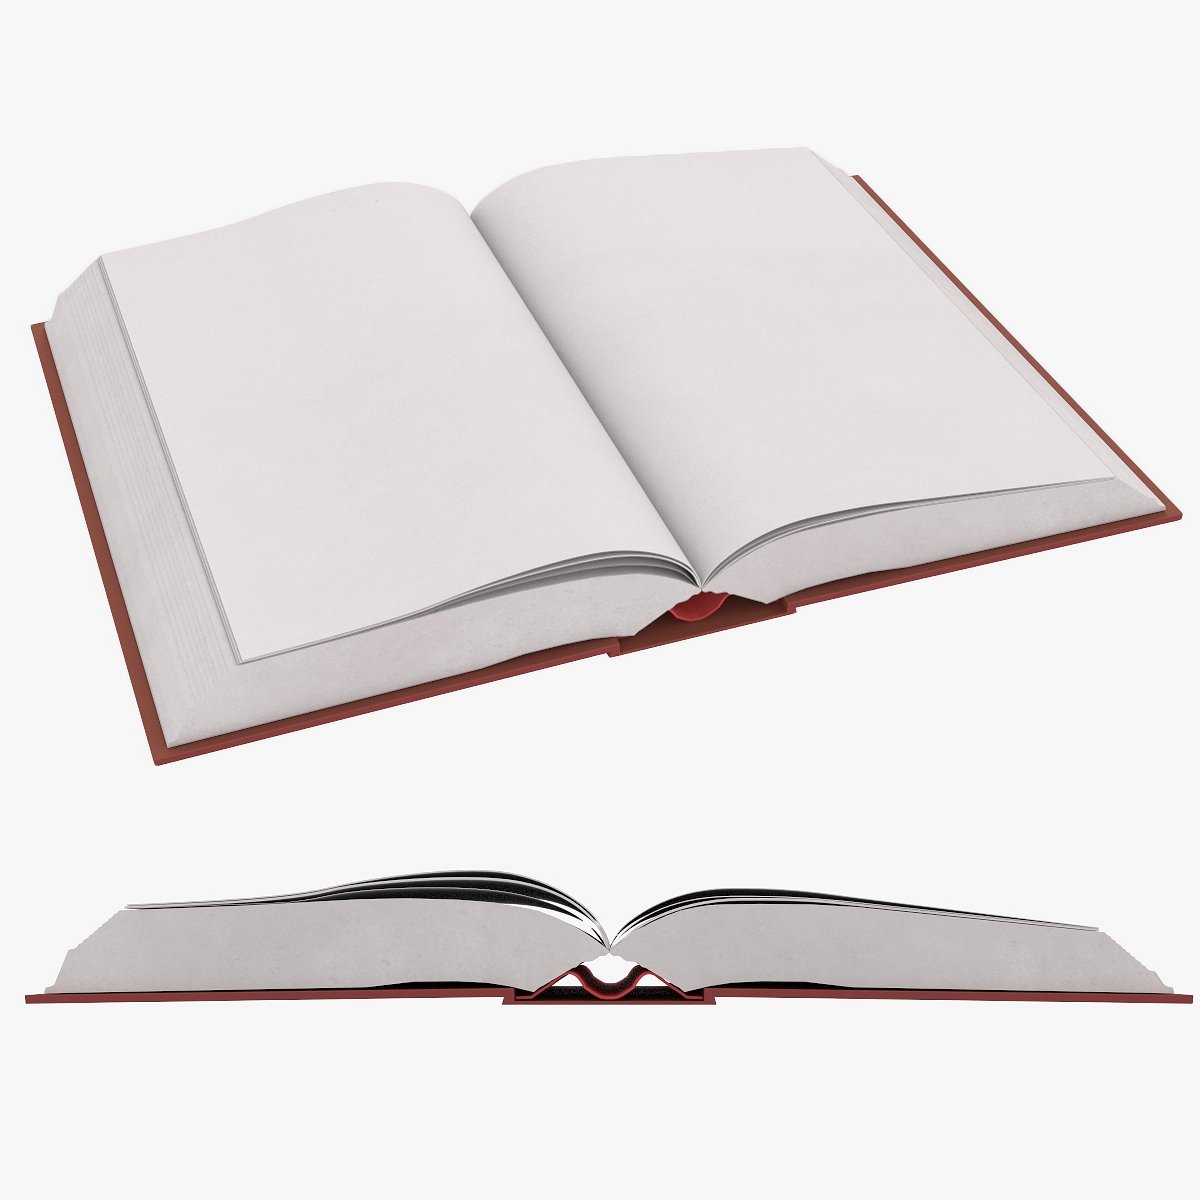 Книги 3 плюс. Книжка 3д модель. Раскрытая книга. Раскрытая книга 3d. Модель книги.